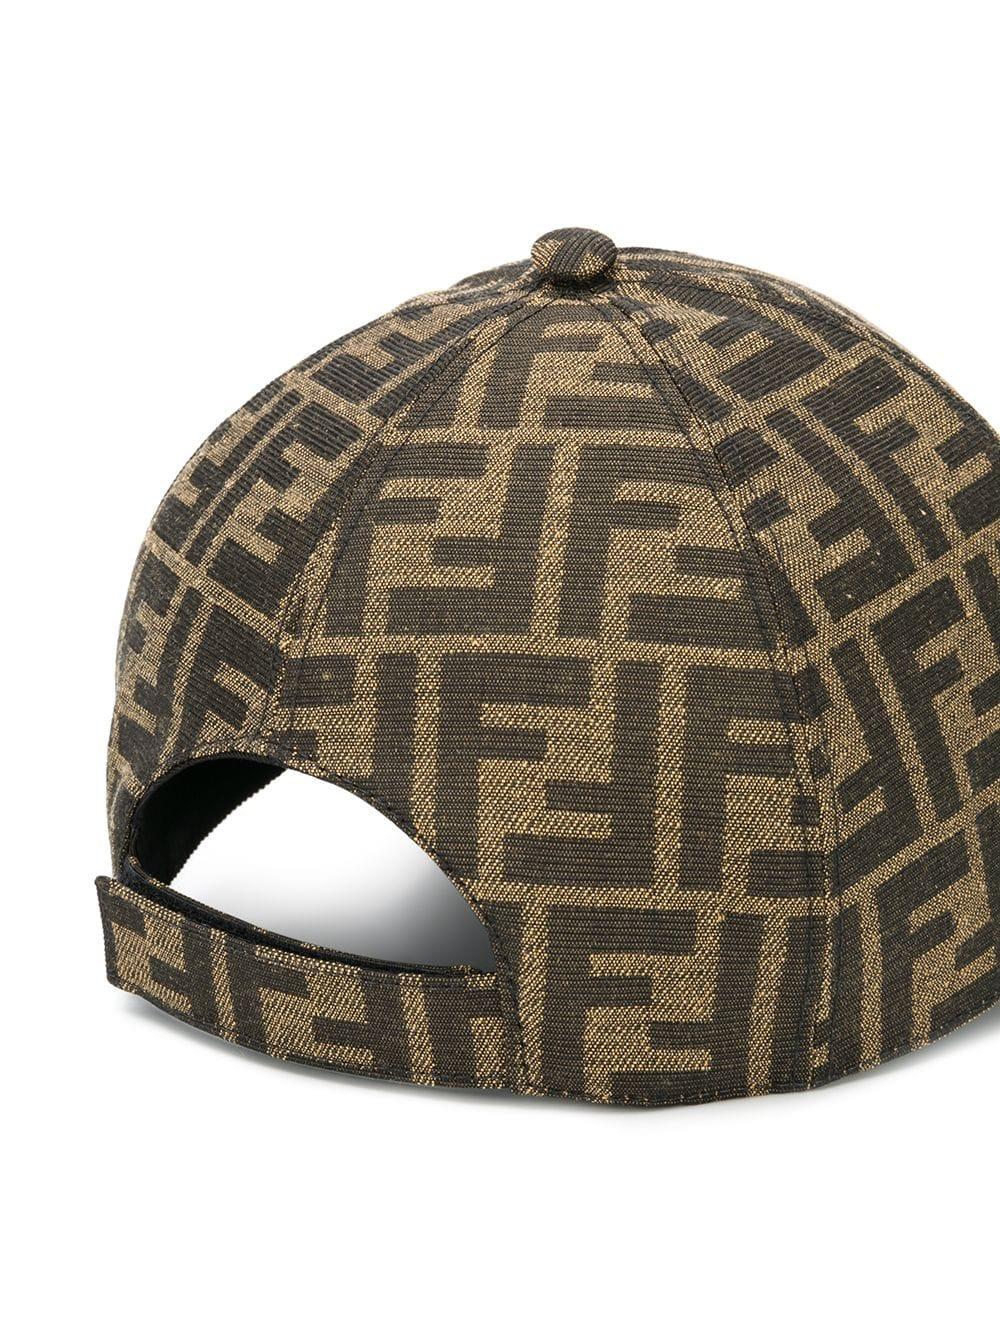 Fendi Ff Logo Leather Visor Baseball Hat in Brown for Men - Lyst